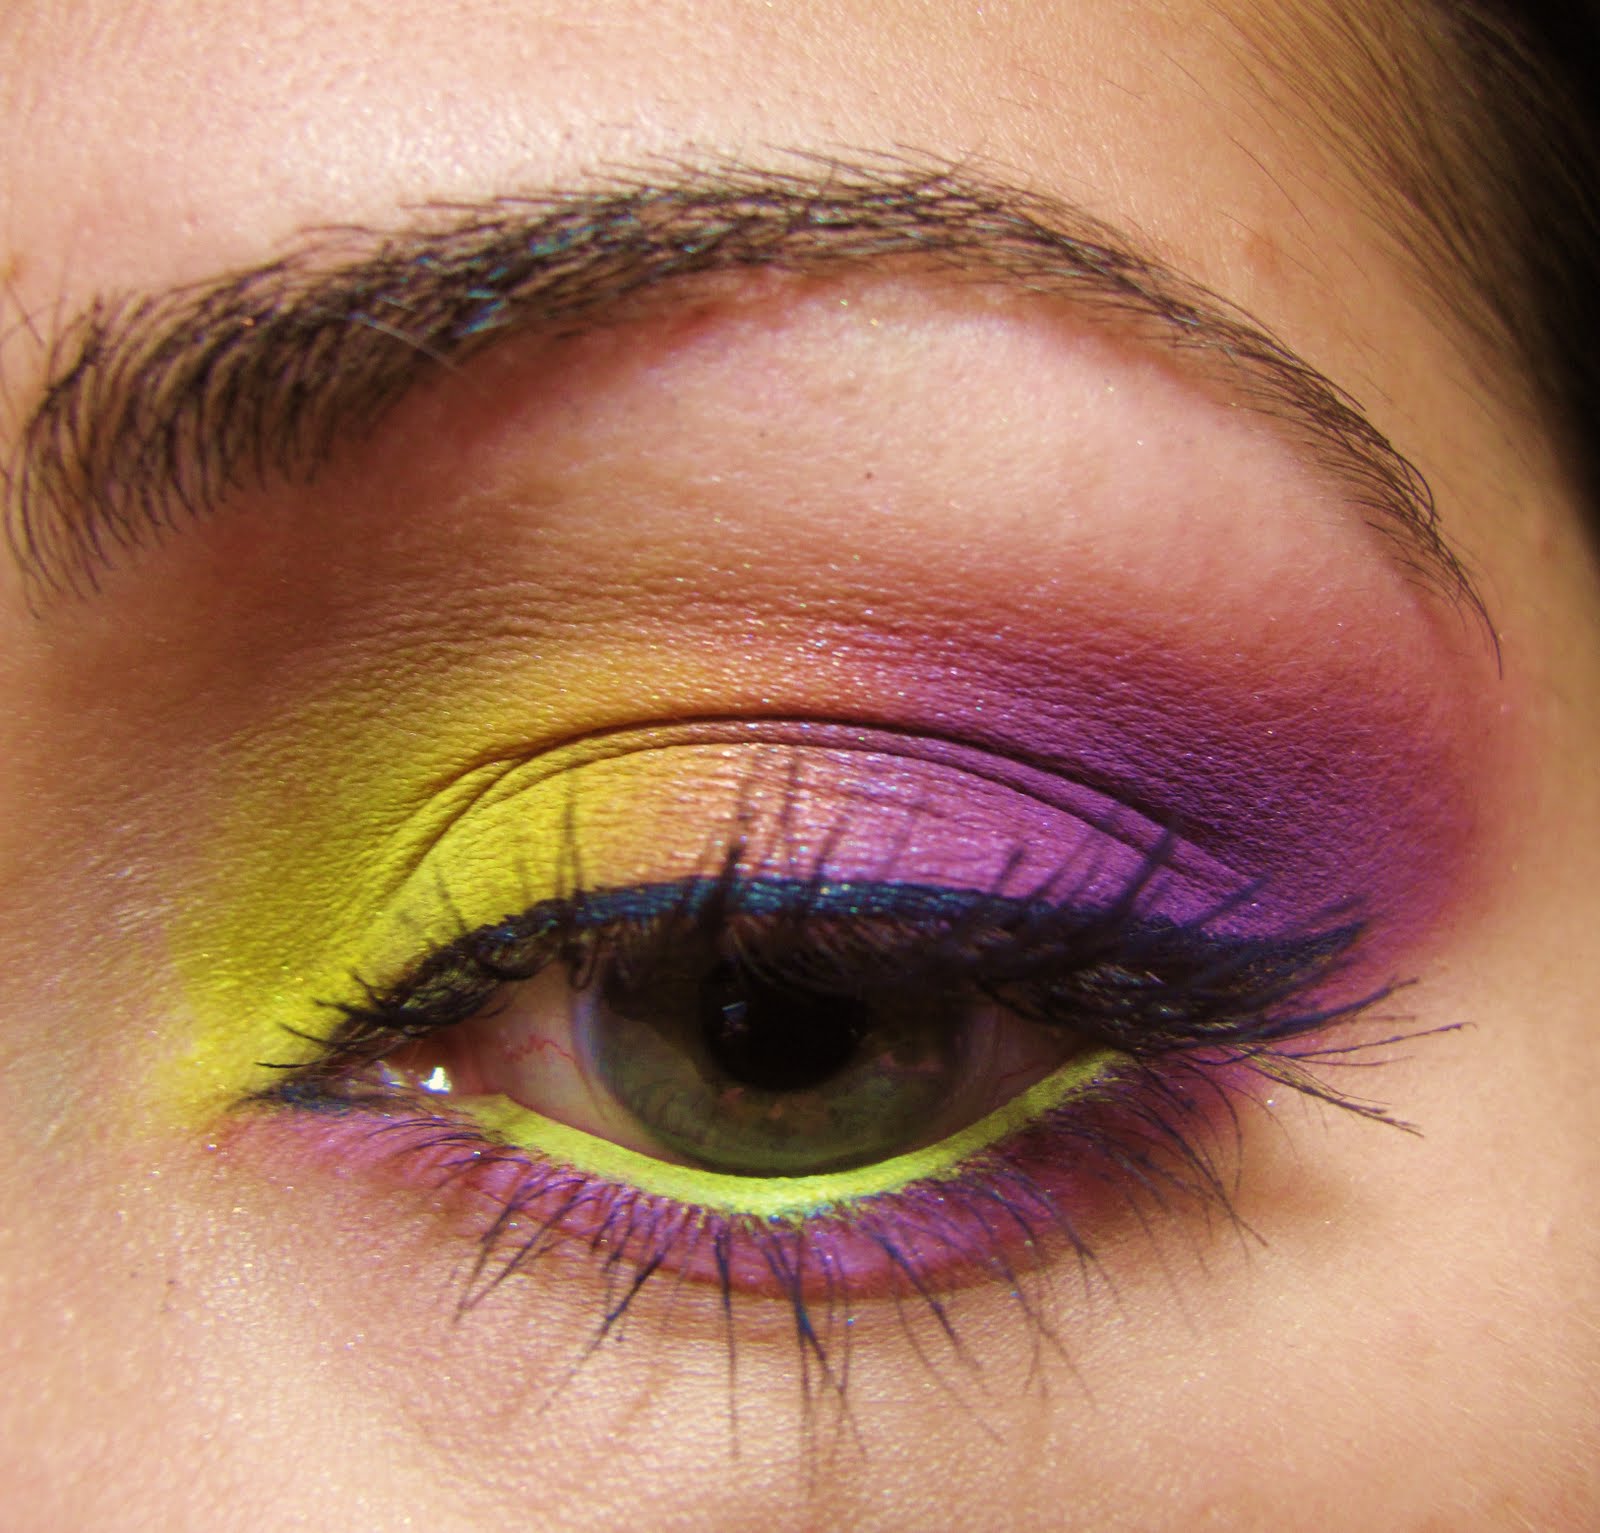 The Makeup Artist Yellow/Purple Eyeshadow